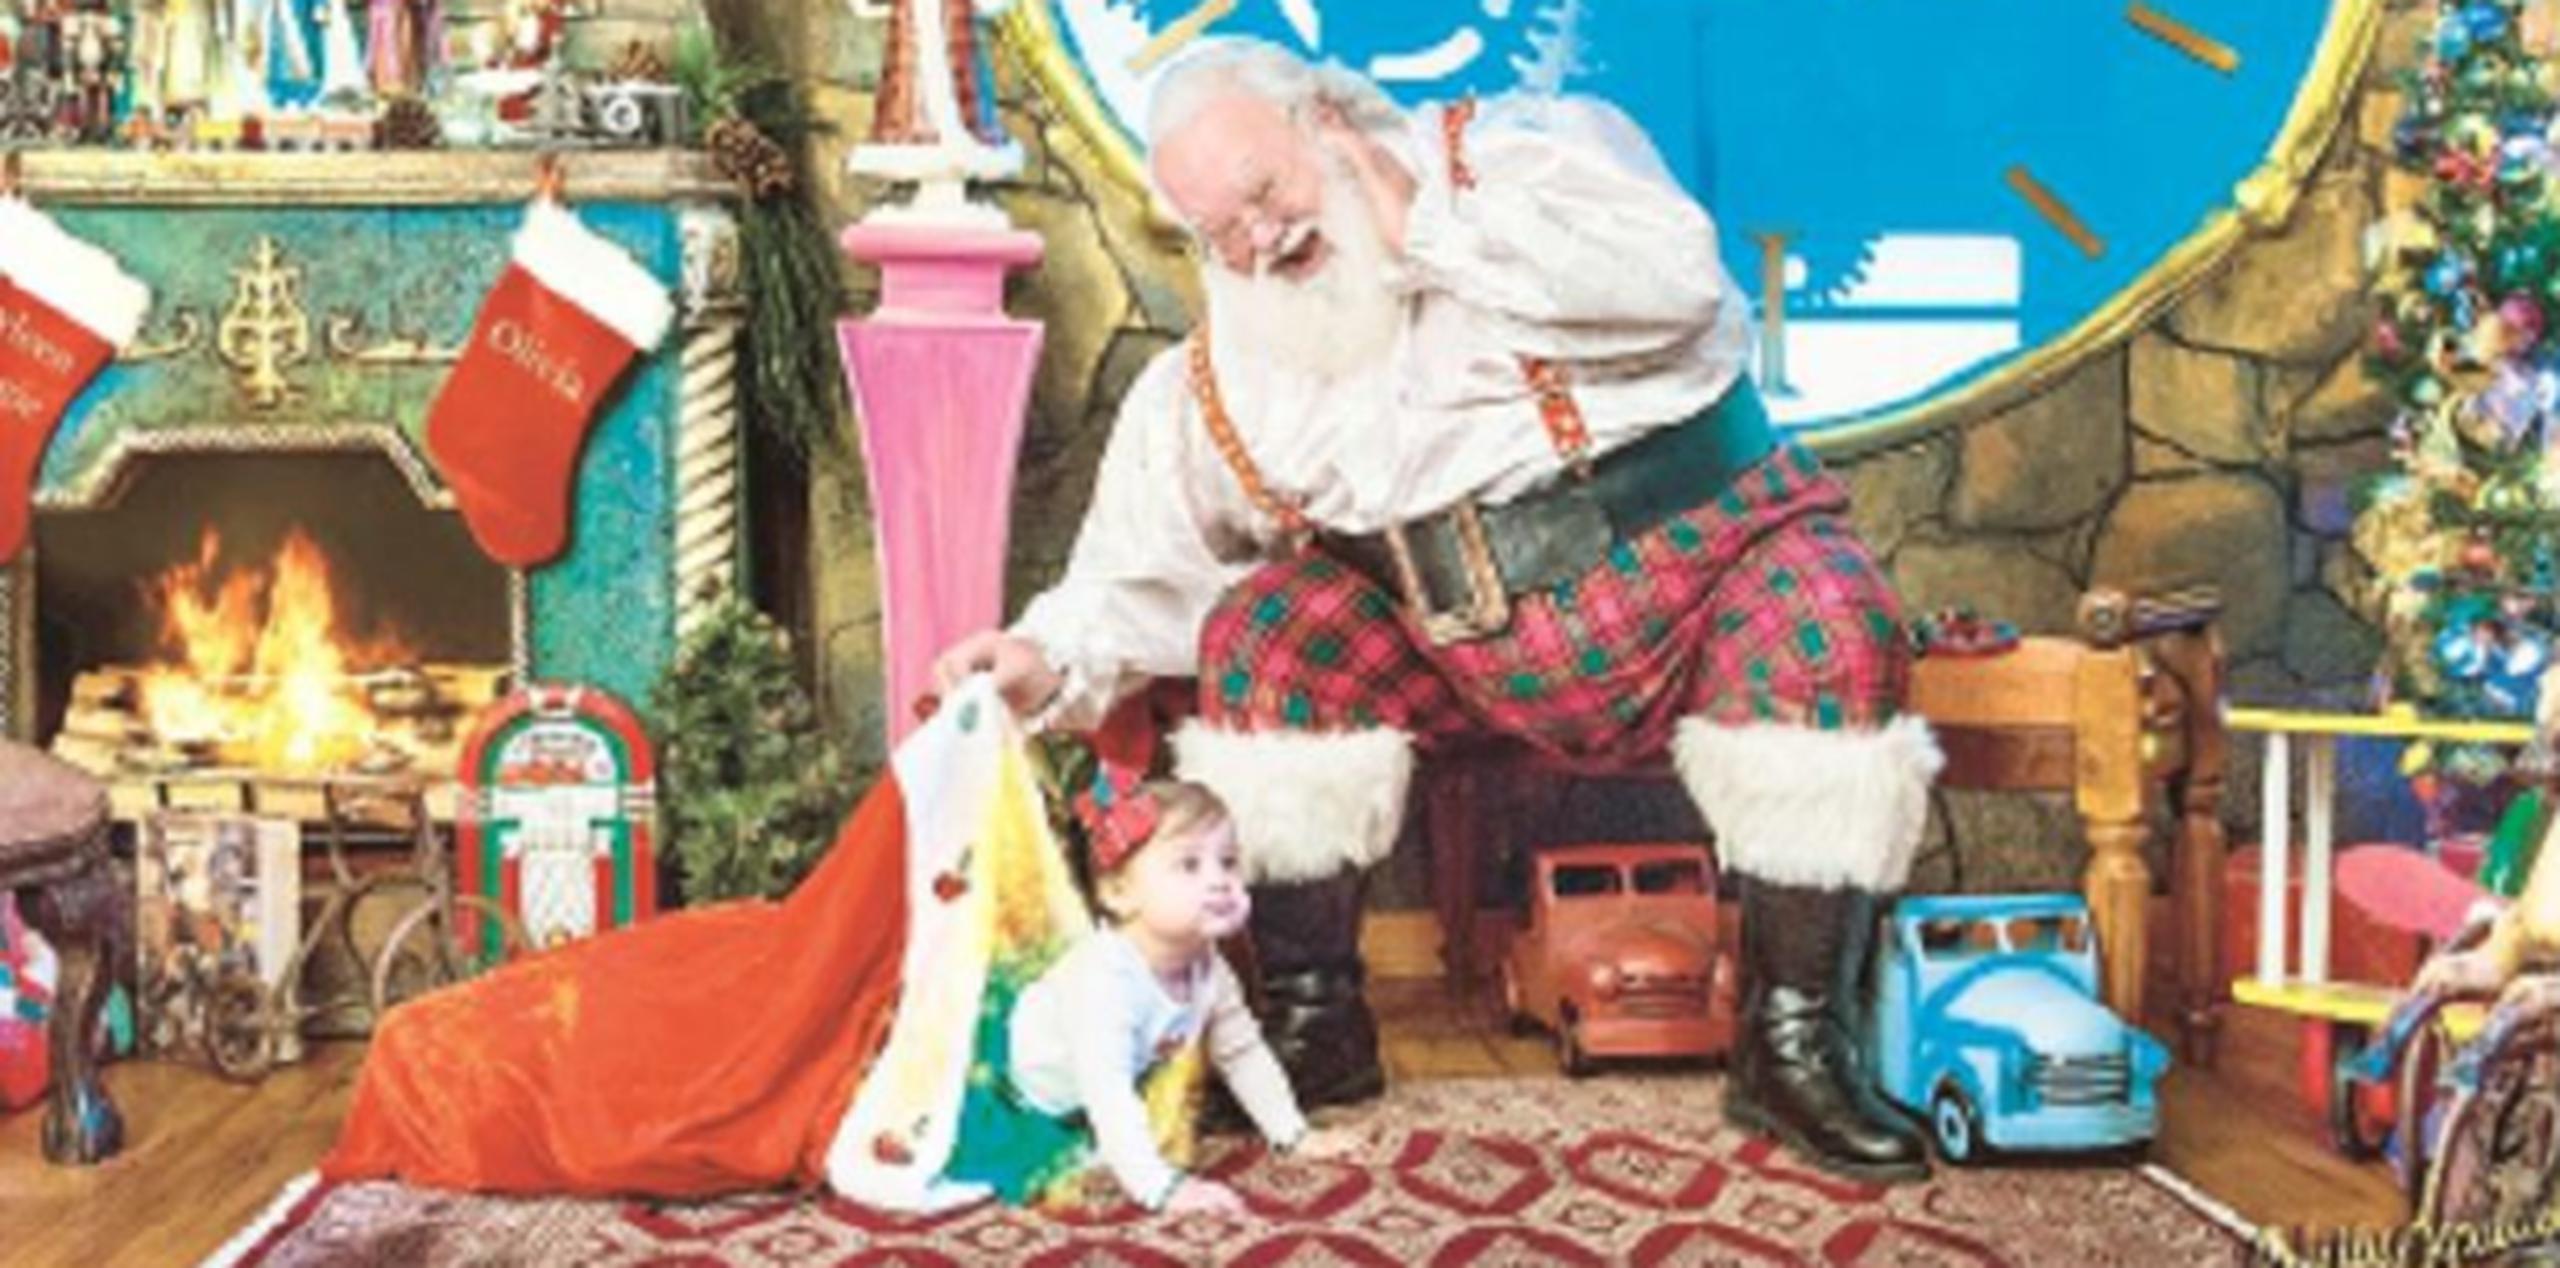 A tres años desde que comenzó a trabajar con Santa Claus, Sepúlveda recuerda con cariño muchas de sus sesiones, pero entre estas se destaca la de un pequeño con problemas del habla. (Suministrada)